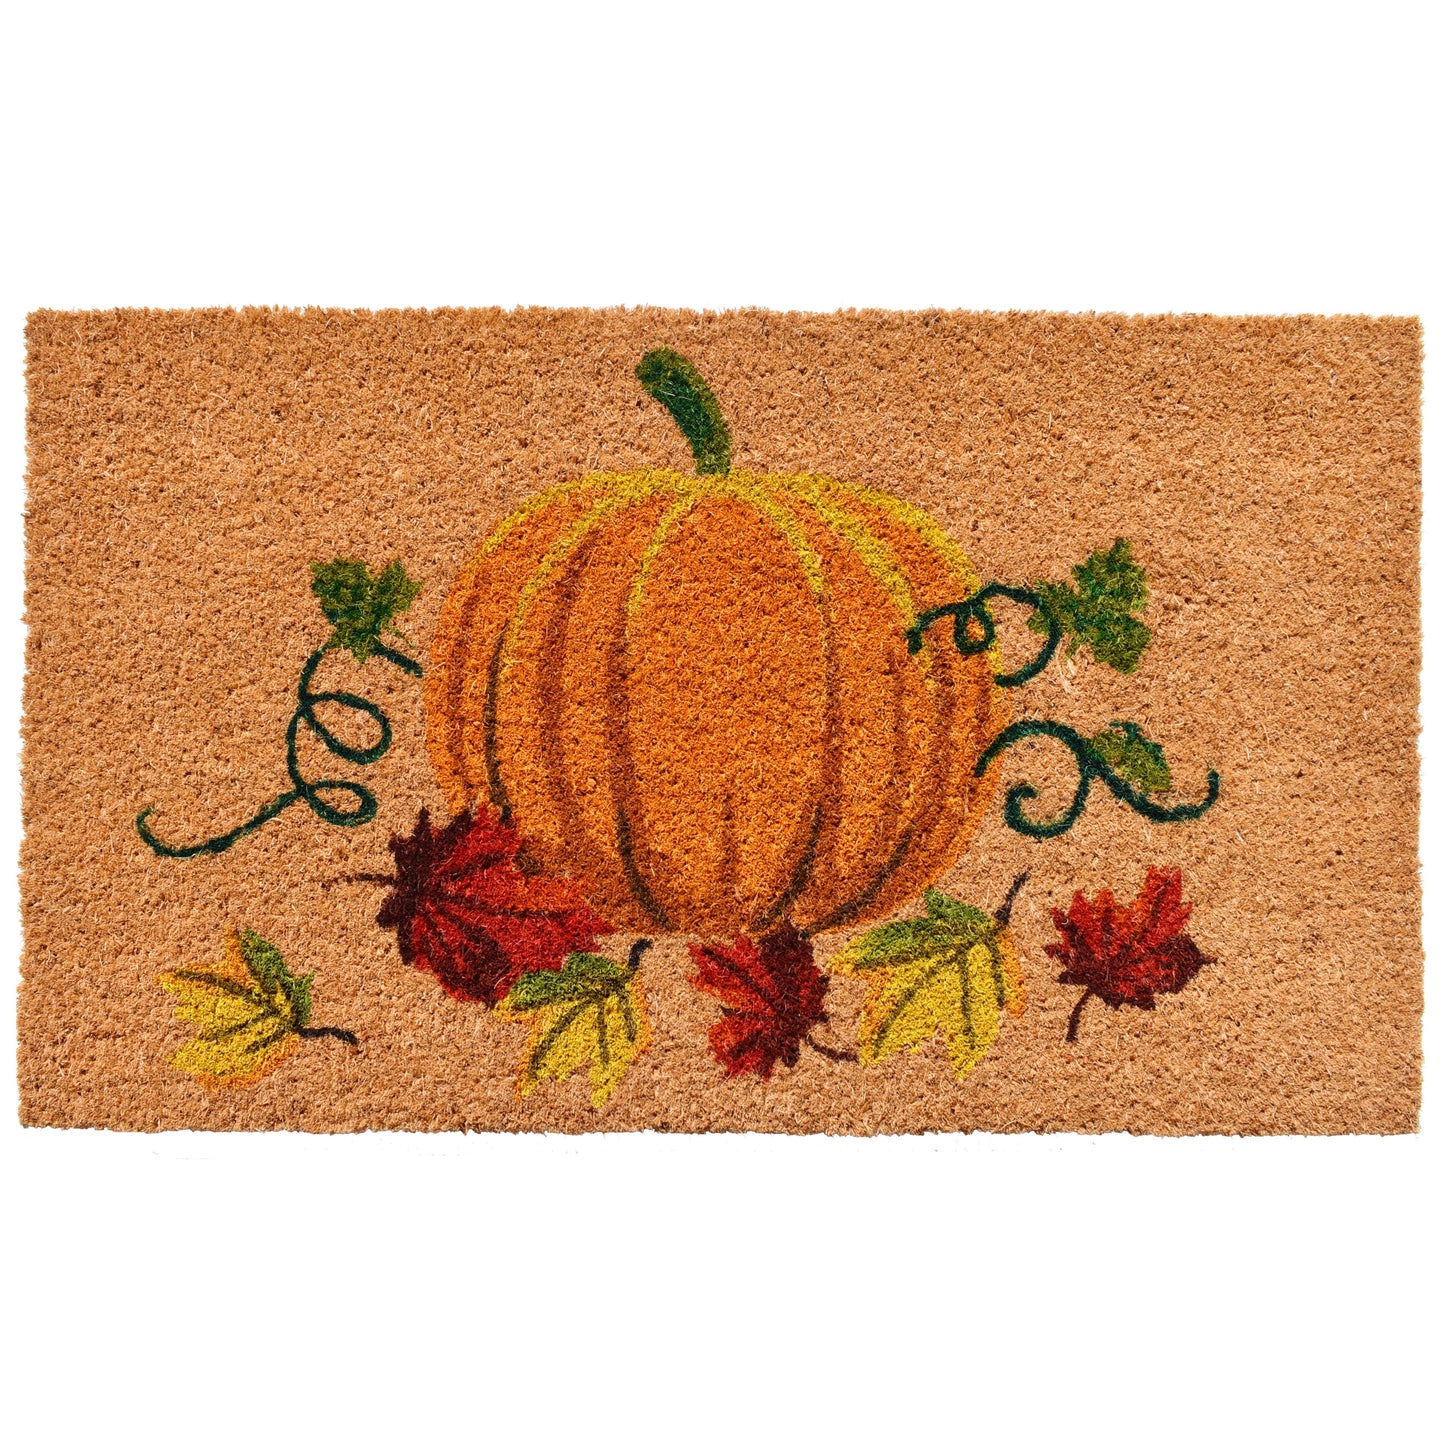 The Pumpkin Doormat